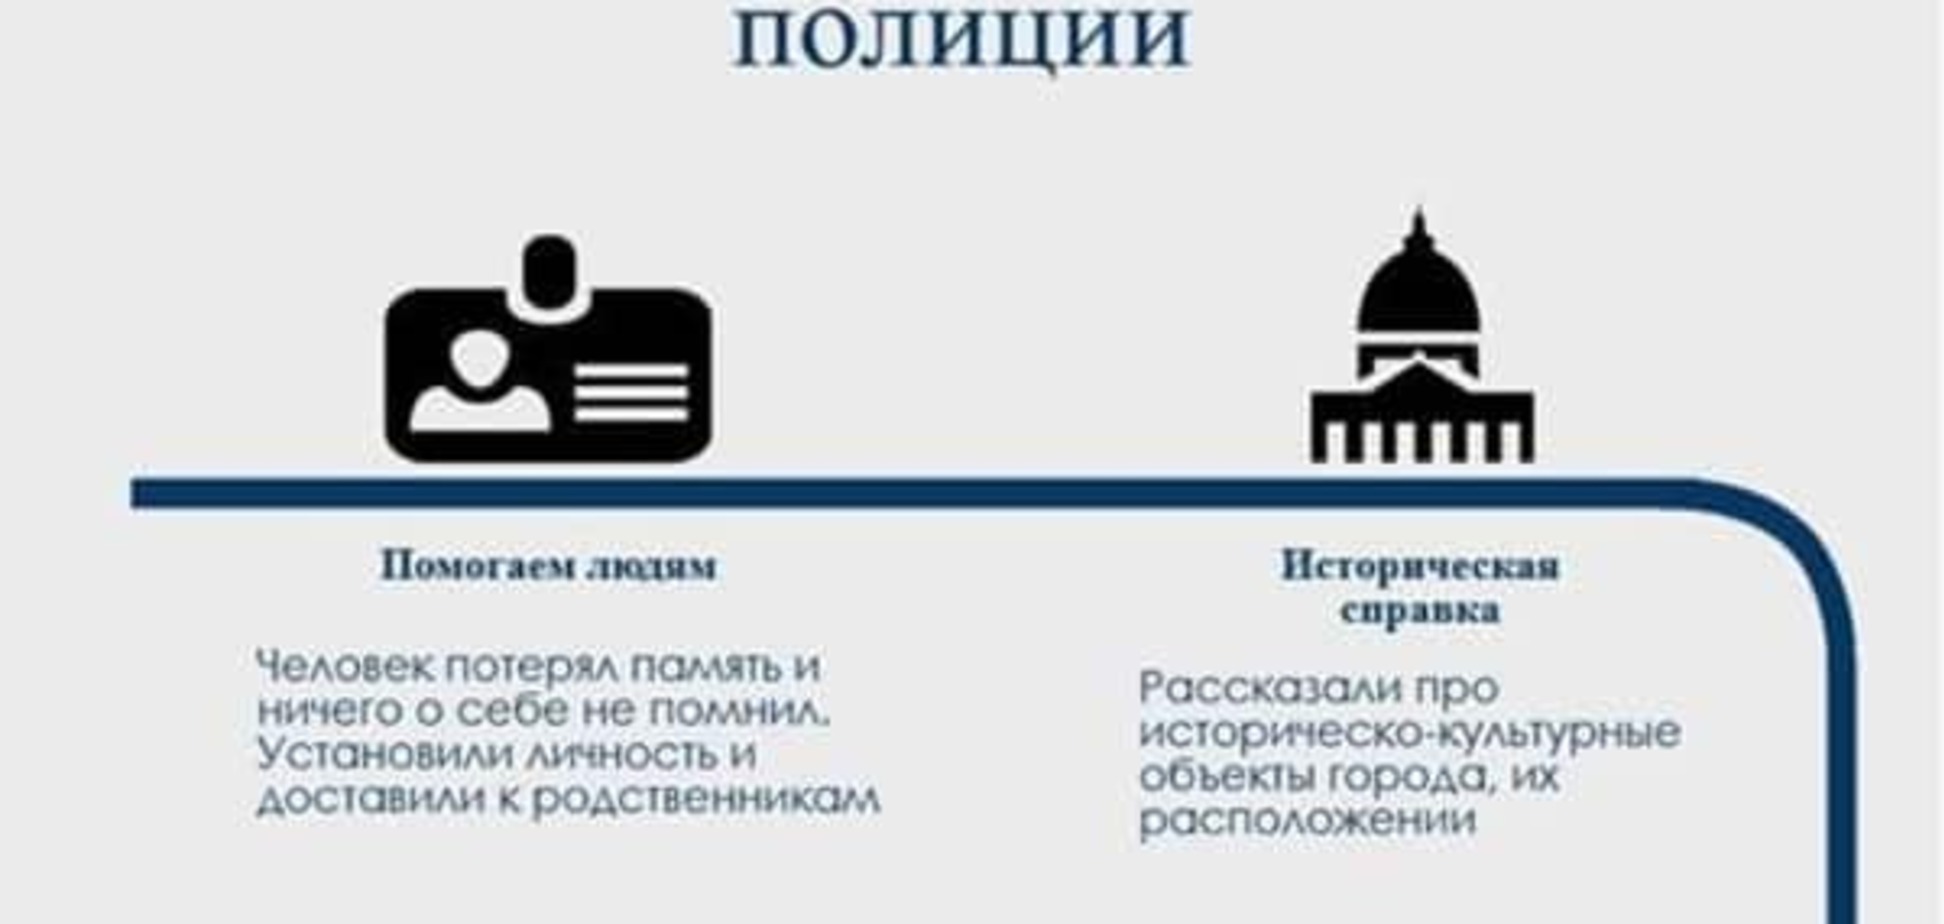 Сыграли на пианино, сняли руфера: полиция Киева отчиталась о работе за 1,5 месяца: инфографика